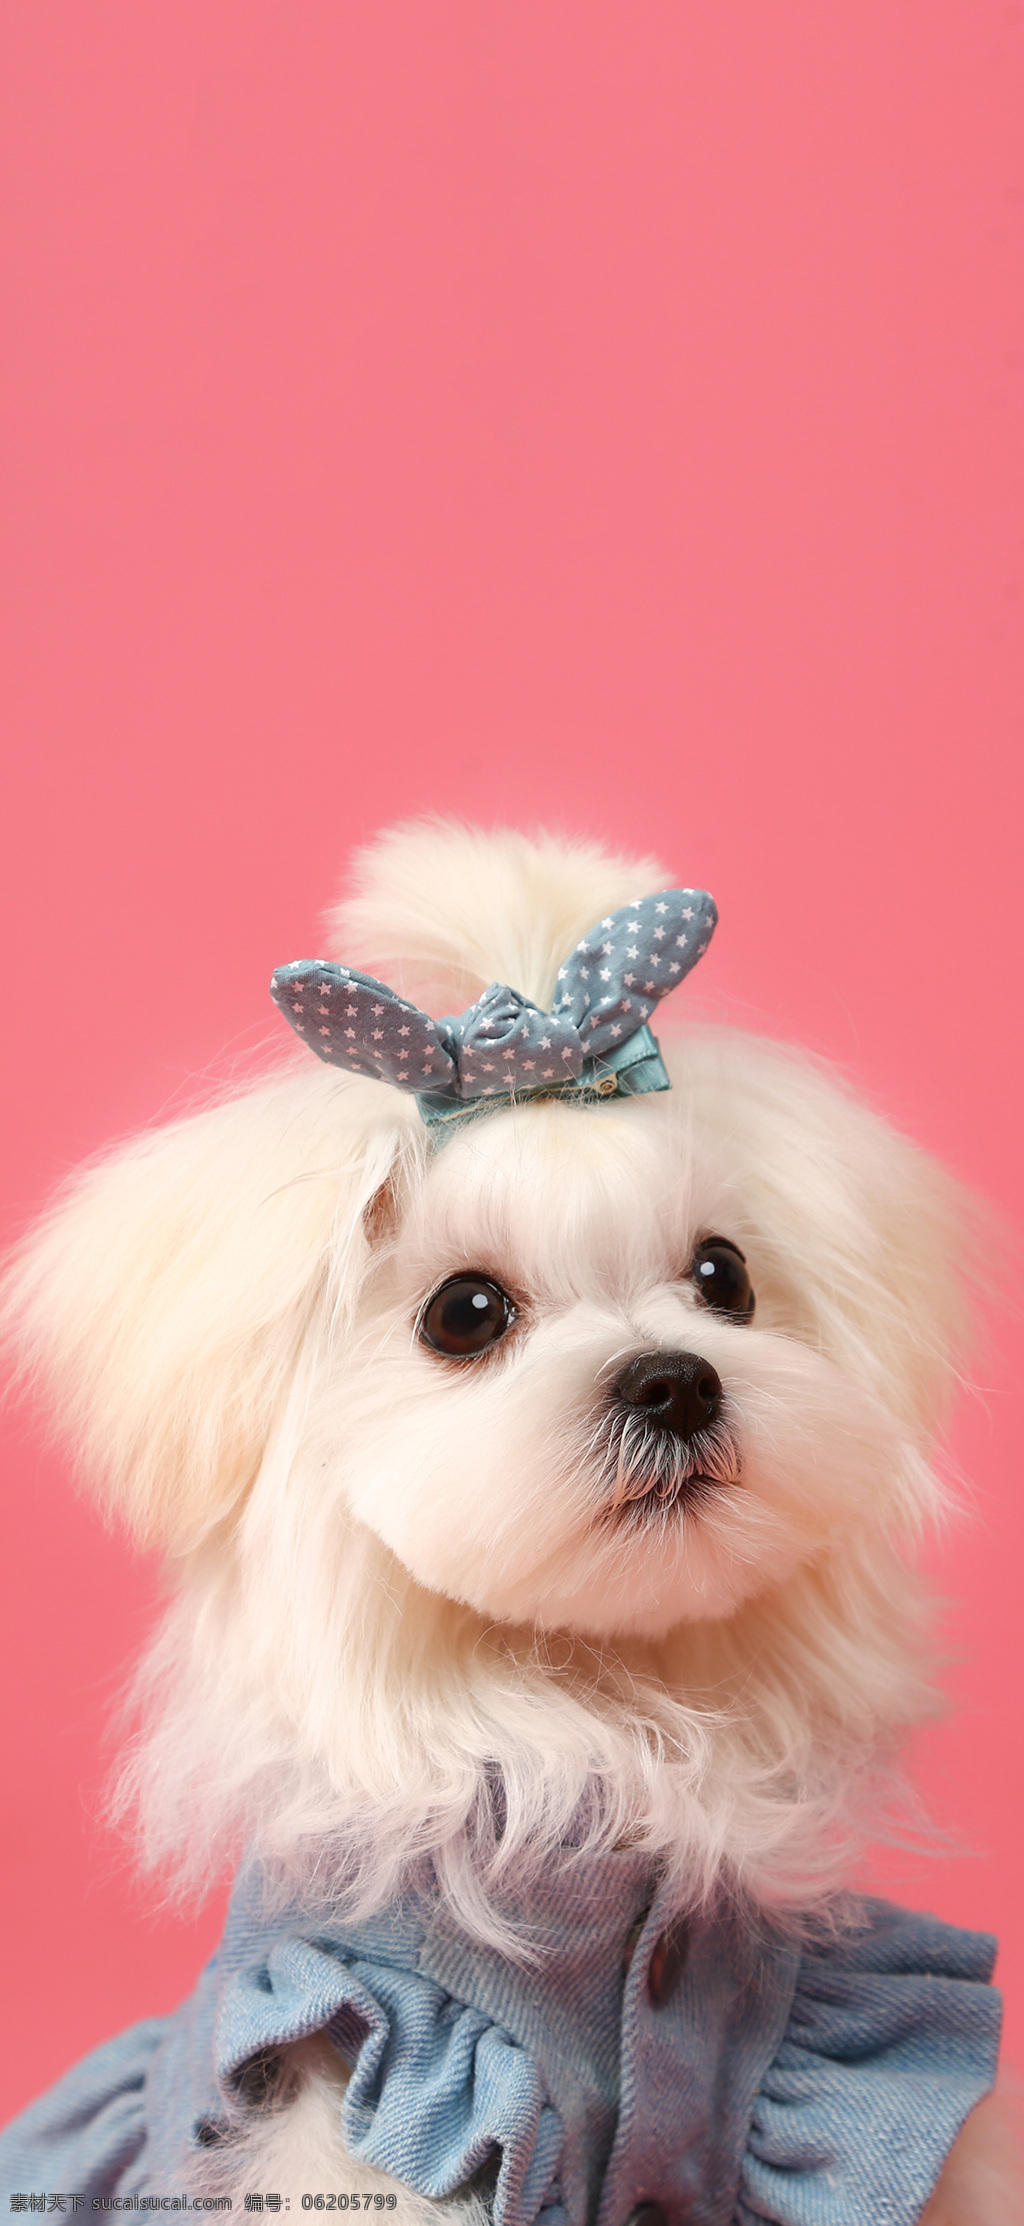 萌宠 狗狗 粉色 壁纸 手机壳图案 狗狗近照 两只狗狗 白色狗狗 可爱狗狗 摄影图片 生物世界 家禽家畜